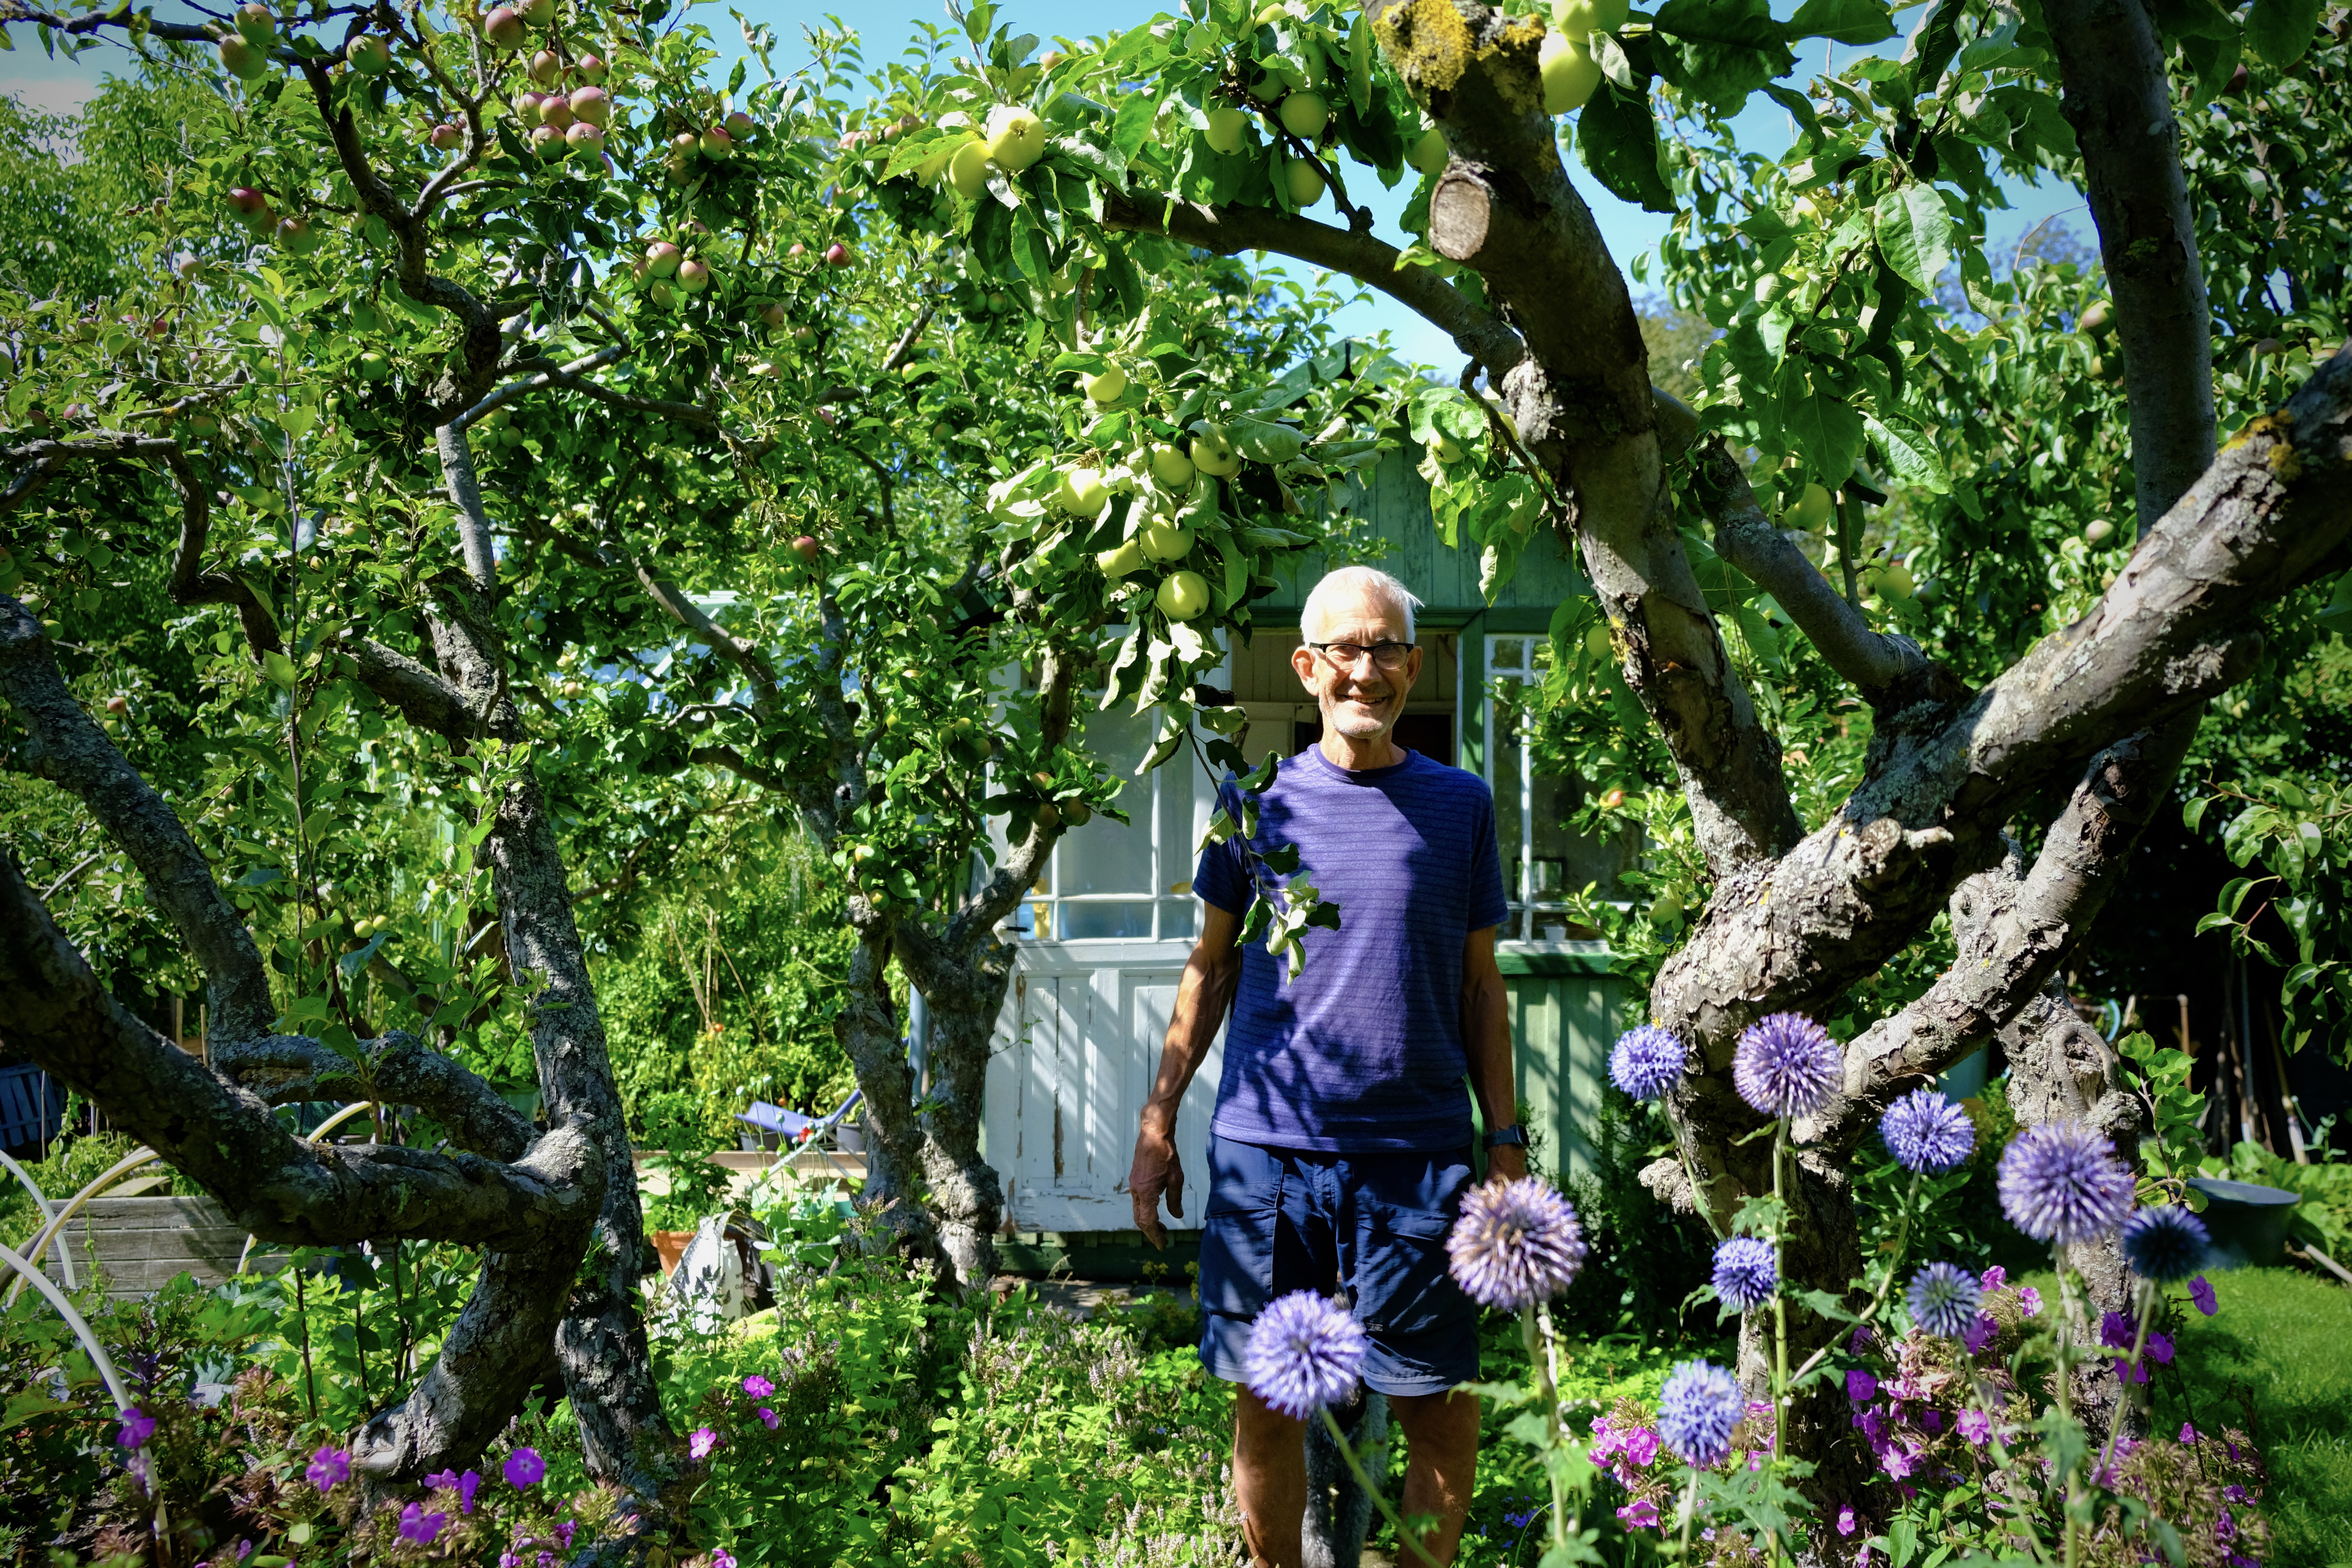 På kolonilotten i St Månslyckan odlar Erik Skärbäck och hans fru grönsaker, frukt, blommor och bär. 
”Alla känner att de mår bra i naturen”, säger han.